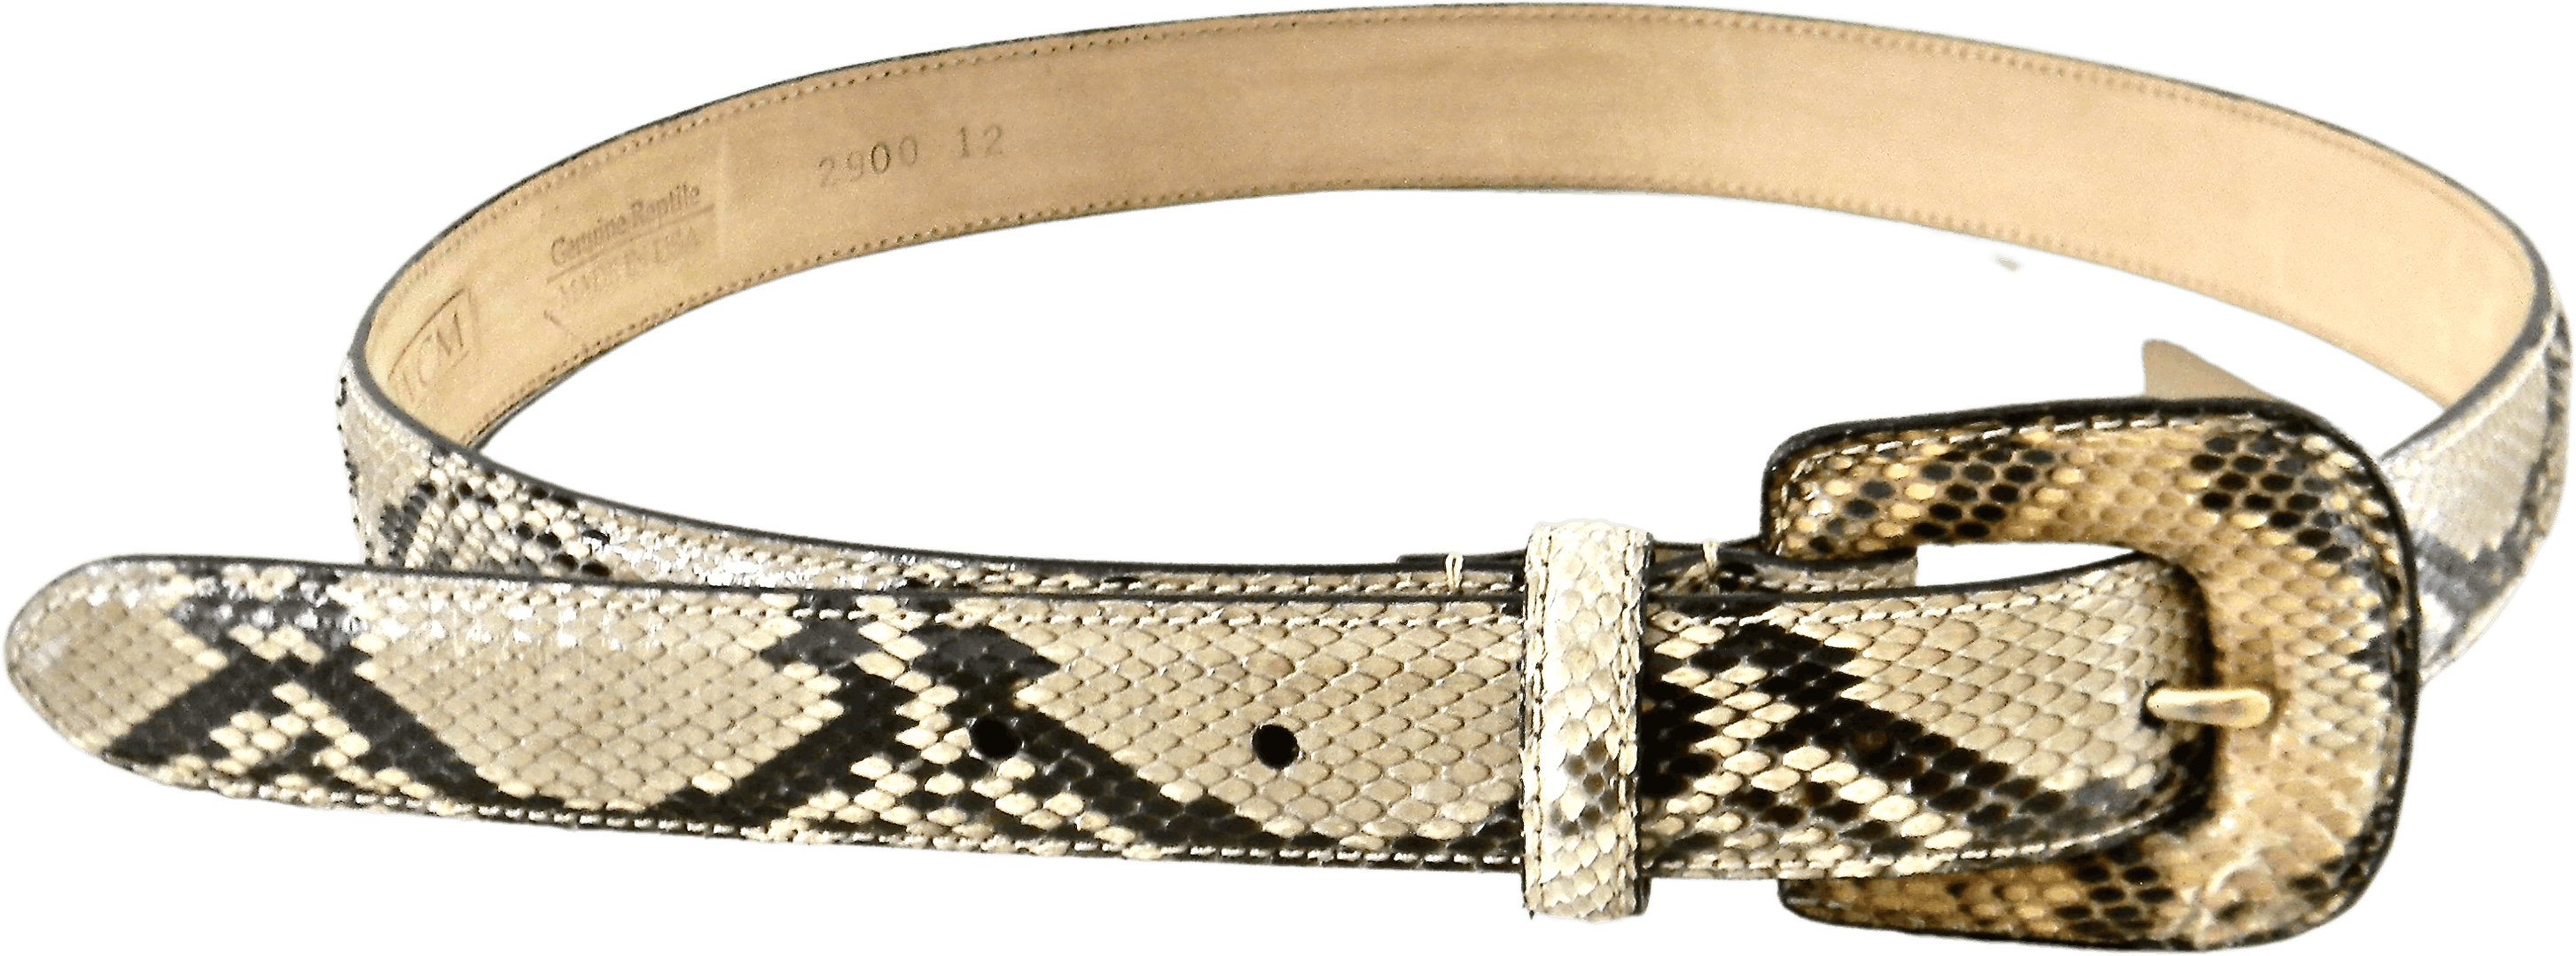 Vintage Refurbed Nos Ladies Med Snakeskin Belt by Wcm New York | Shop ...